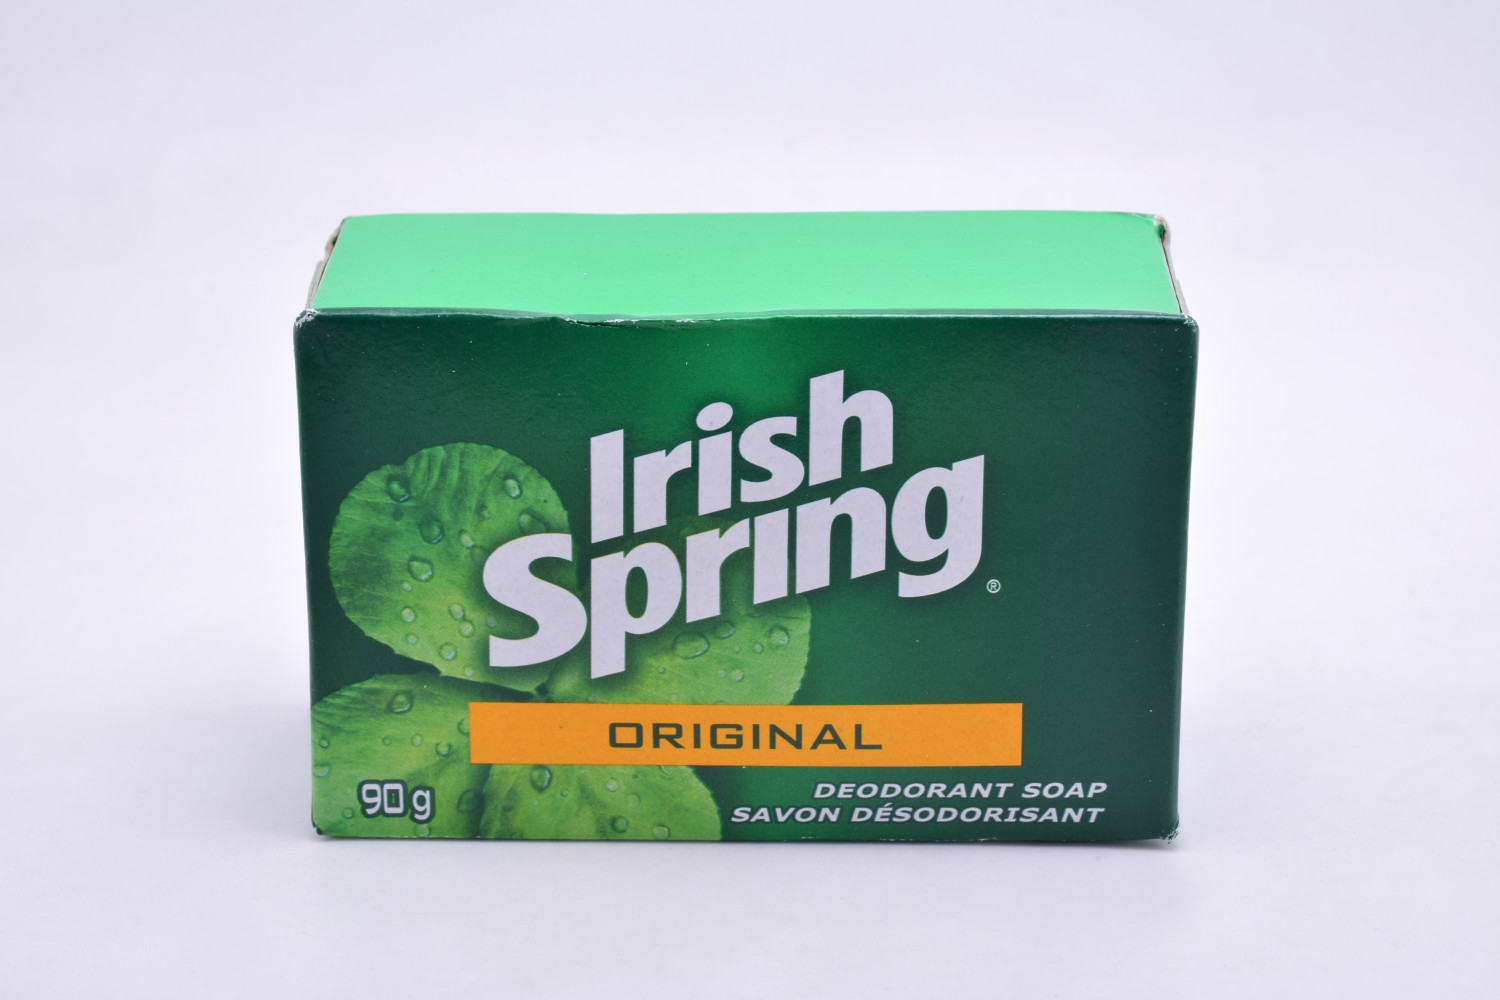 Irish spring original deodorant soap